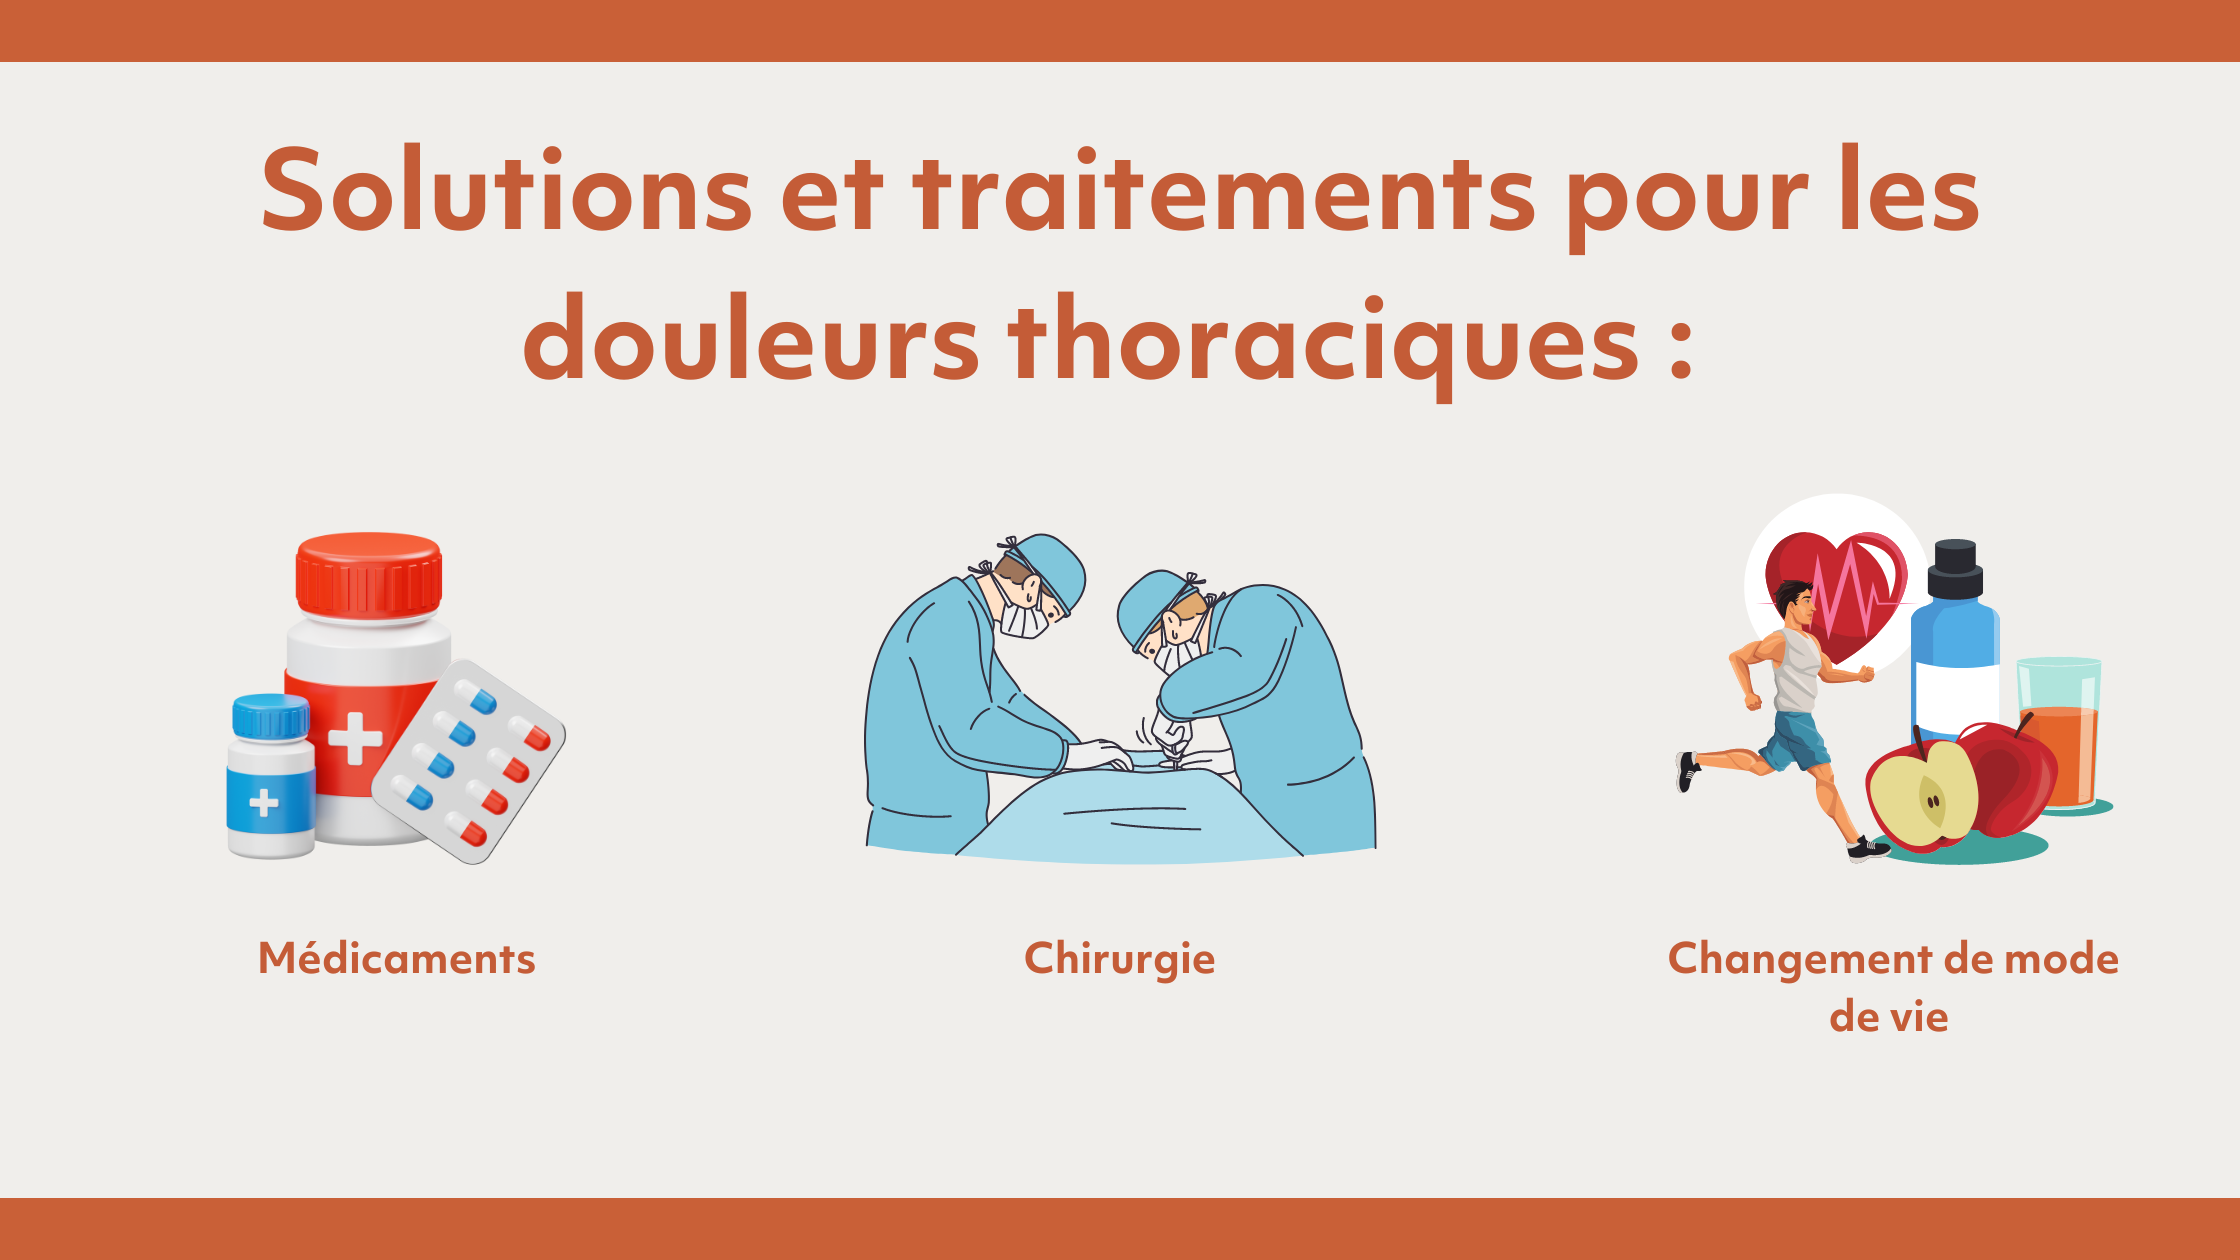 Douleurs thoraciques la nuit : causes et solutions - MedCline France